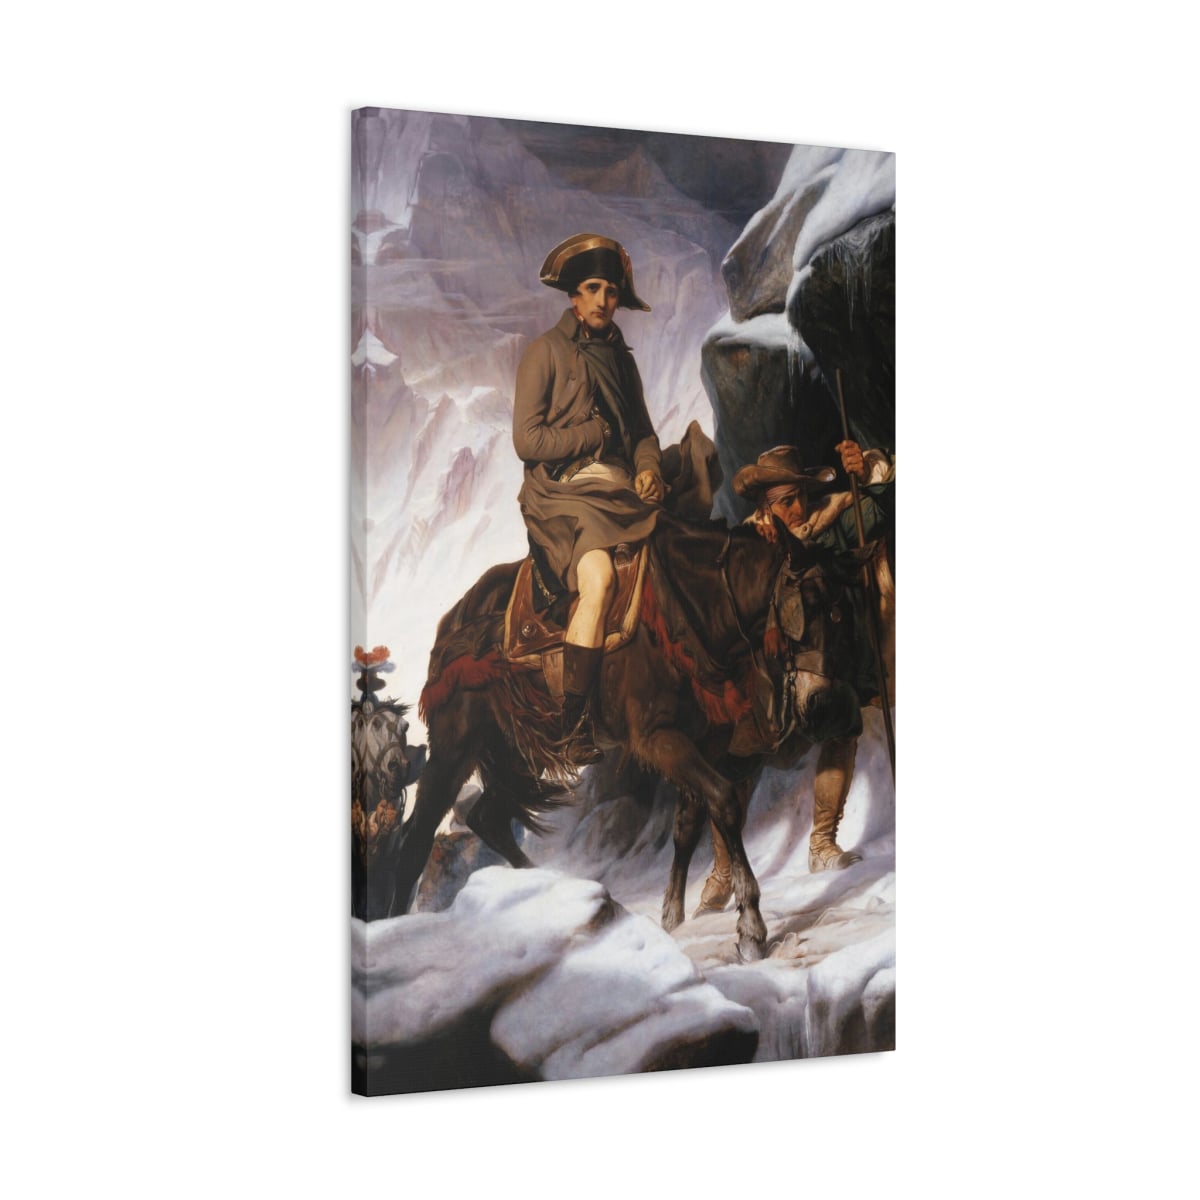 Napoleon Bonaparte on a Mule Canvas Gallery Wrap